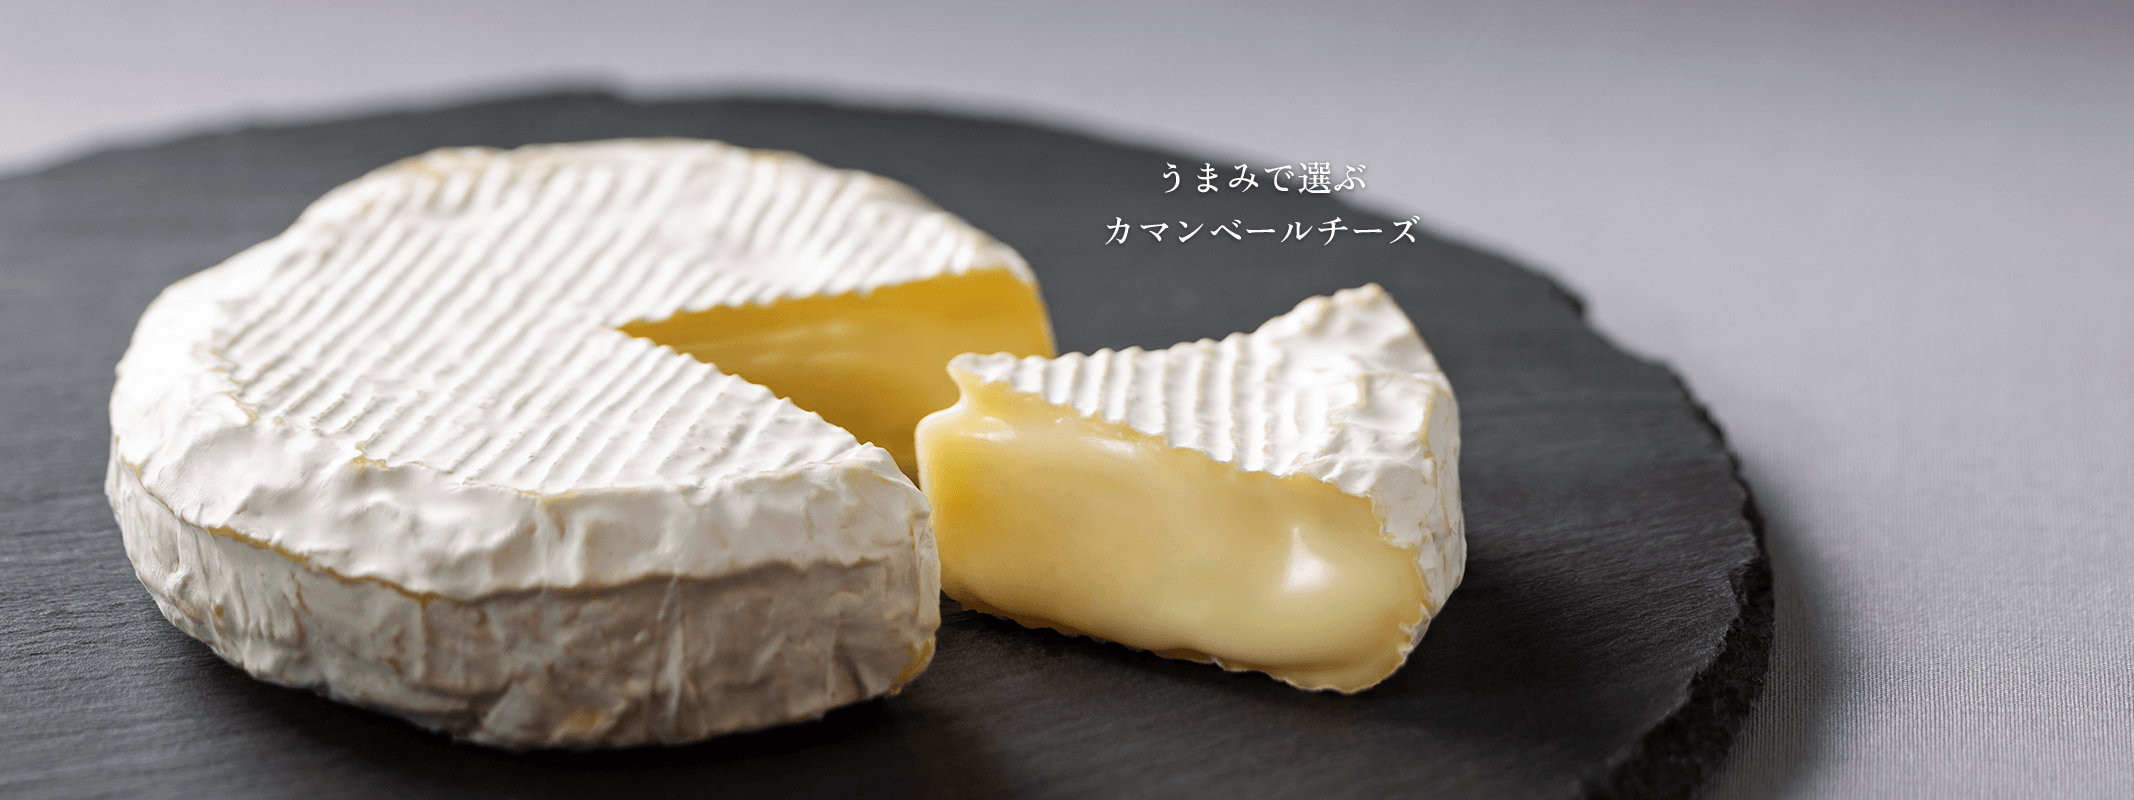 雪印北海道100 カマンベールチーズ 雪印メグミルク株式会社